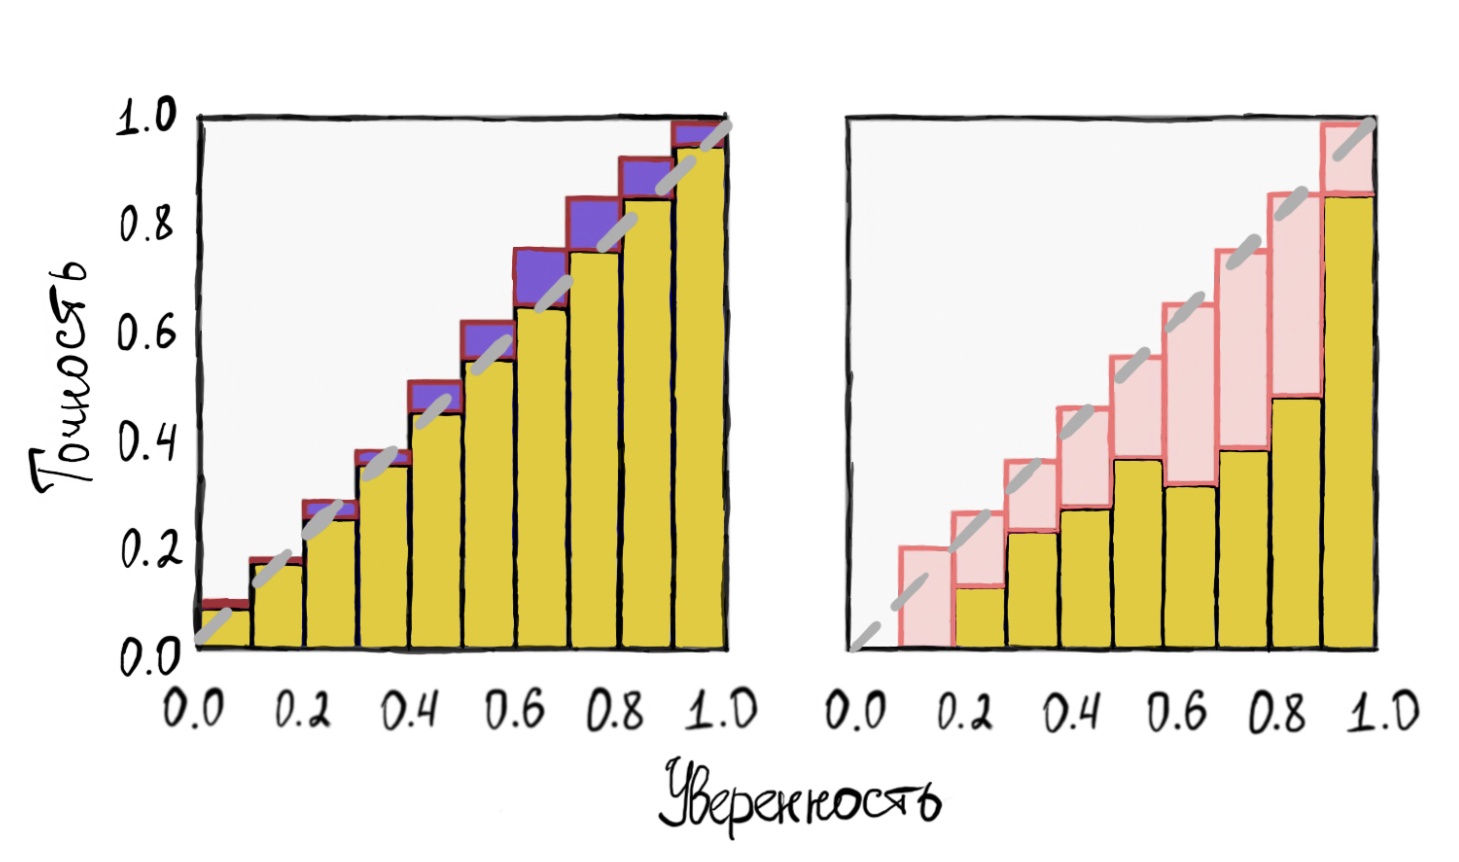 Жёлтый цвет здесь - предсказанное распределение. Фиолетовый и розовый - отступы от оптимальных значений в большую и меньшую сторону соответственно.